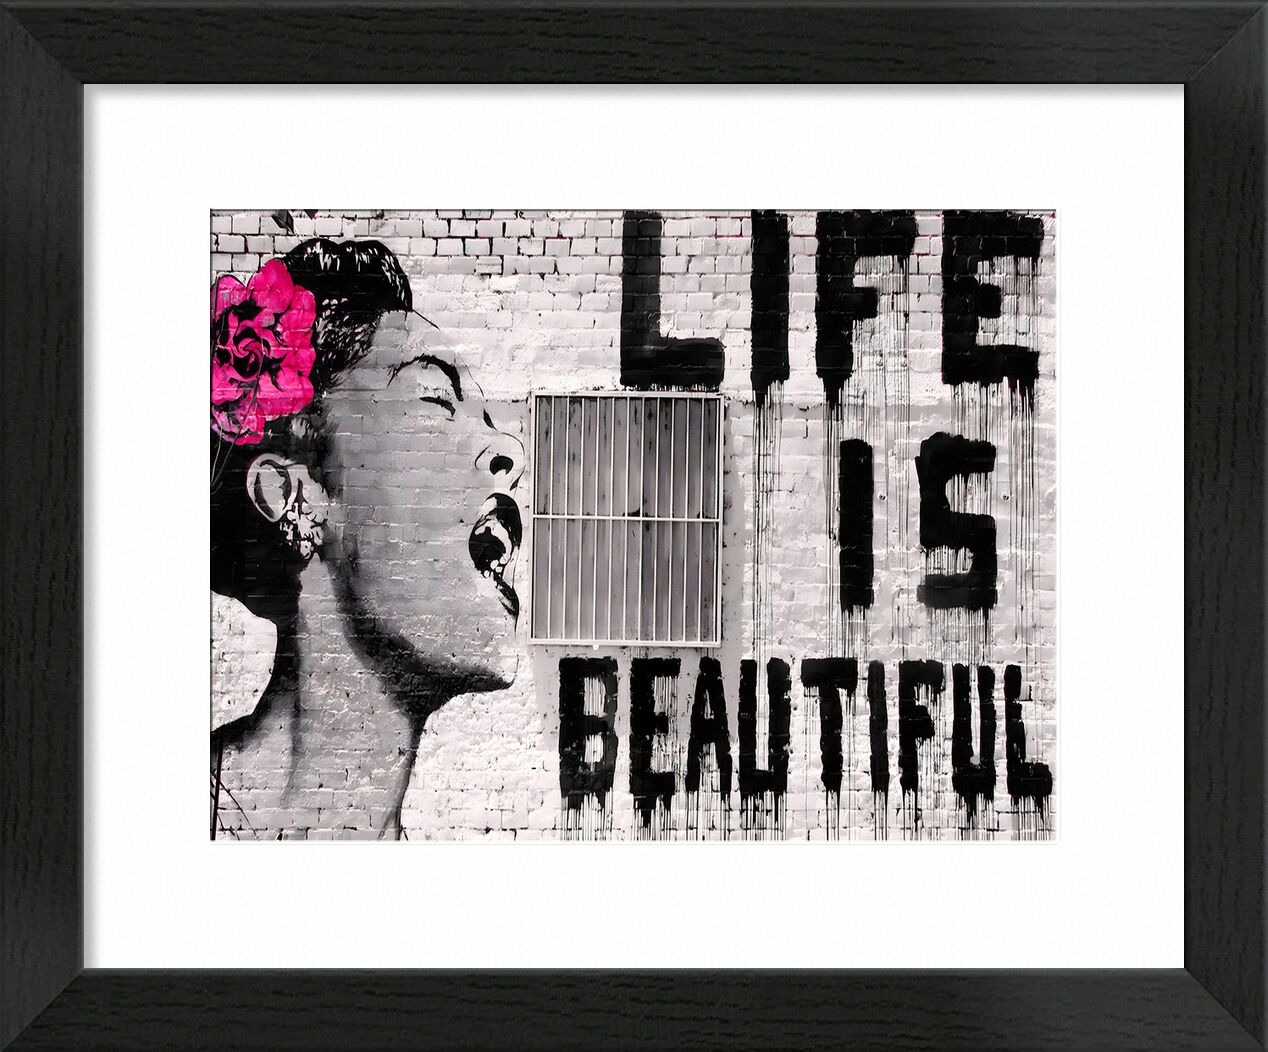 Life is Beautiful - Banksy von Bildende Kunst, Prodi Art, banksy, Frau, schön, Leben, Straße, Straßenfoto